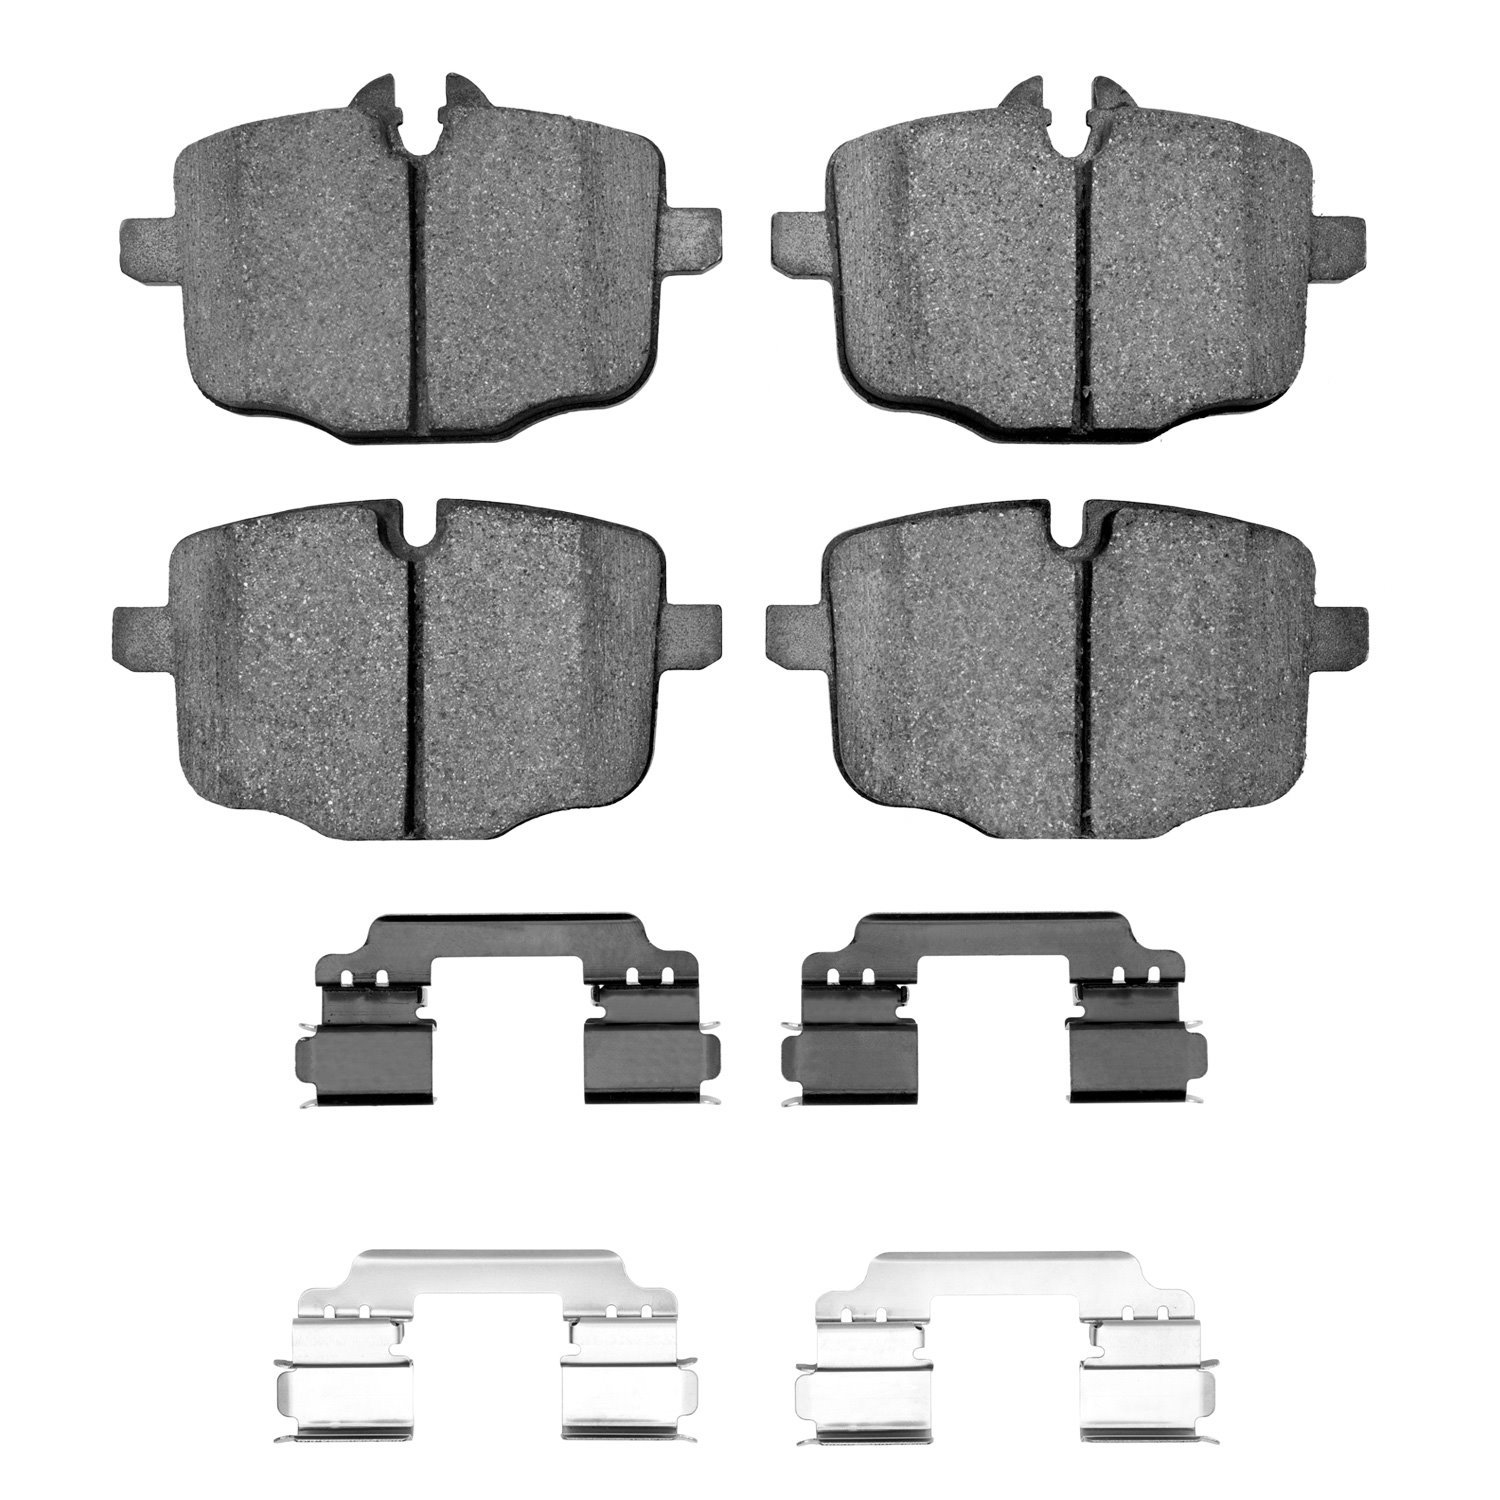 1311-1469-02 3000-Series Semi-Metallic Brake Pads & Hardware Kit, 2012-2019 BMW, Position: Rear